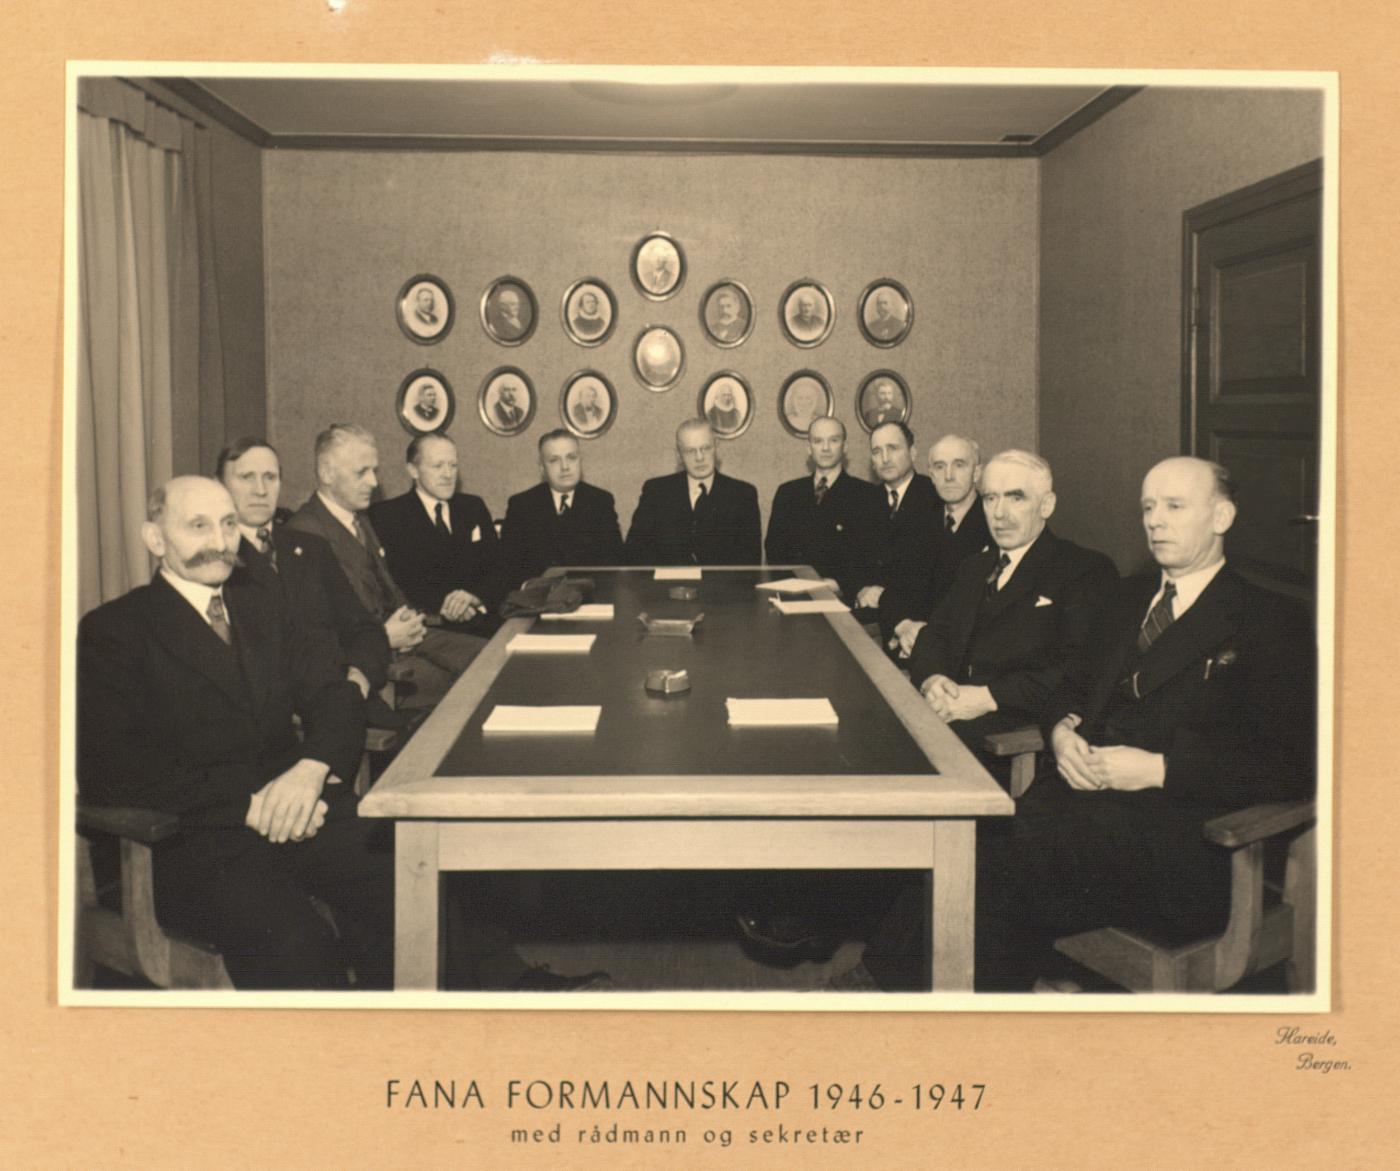 Fana formannskap 1946-47. Fotograf: Hareide. Fra arkivet etter formannskapet (A-0501).